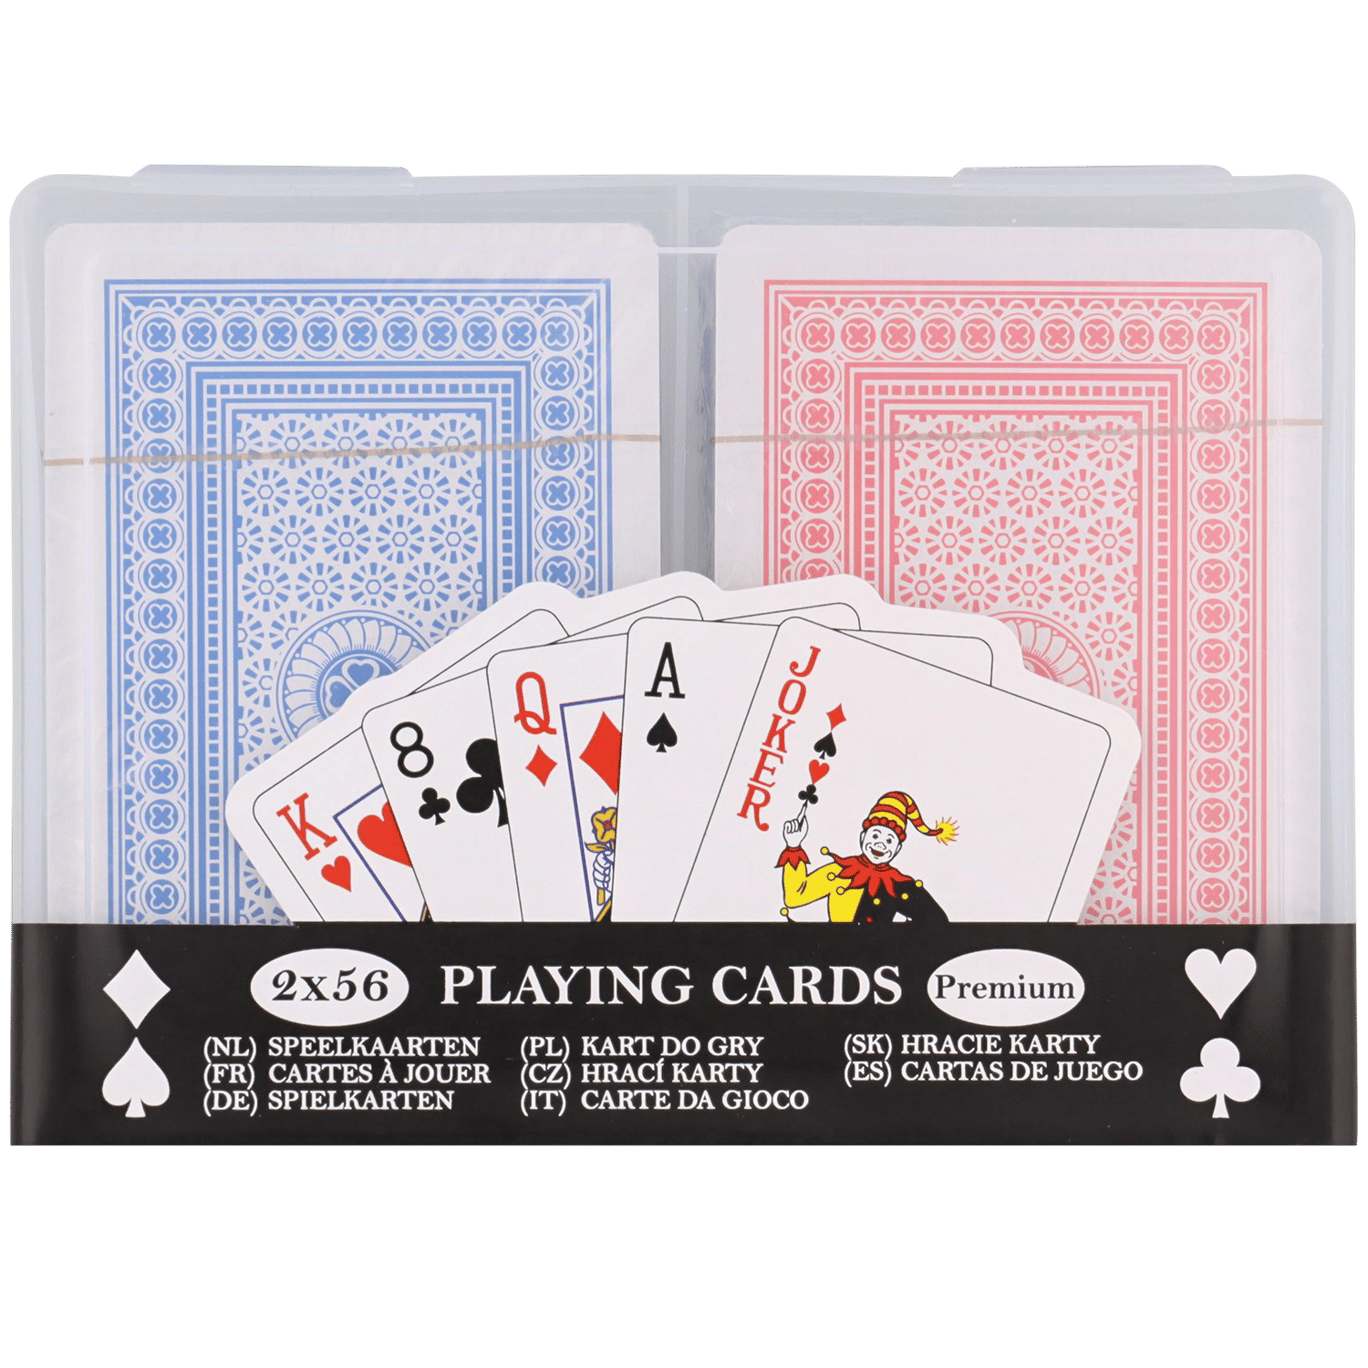 Tarjetas de juego 2x56 premium juego de cartas 